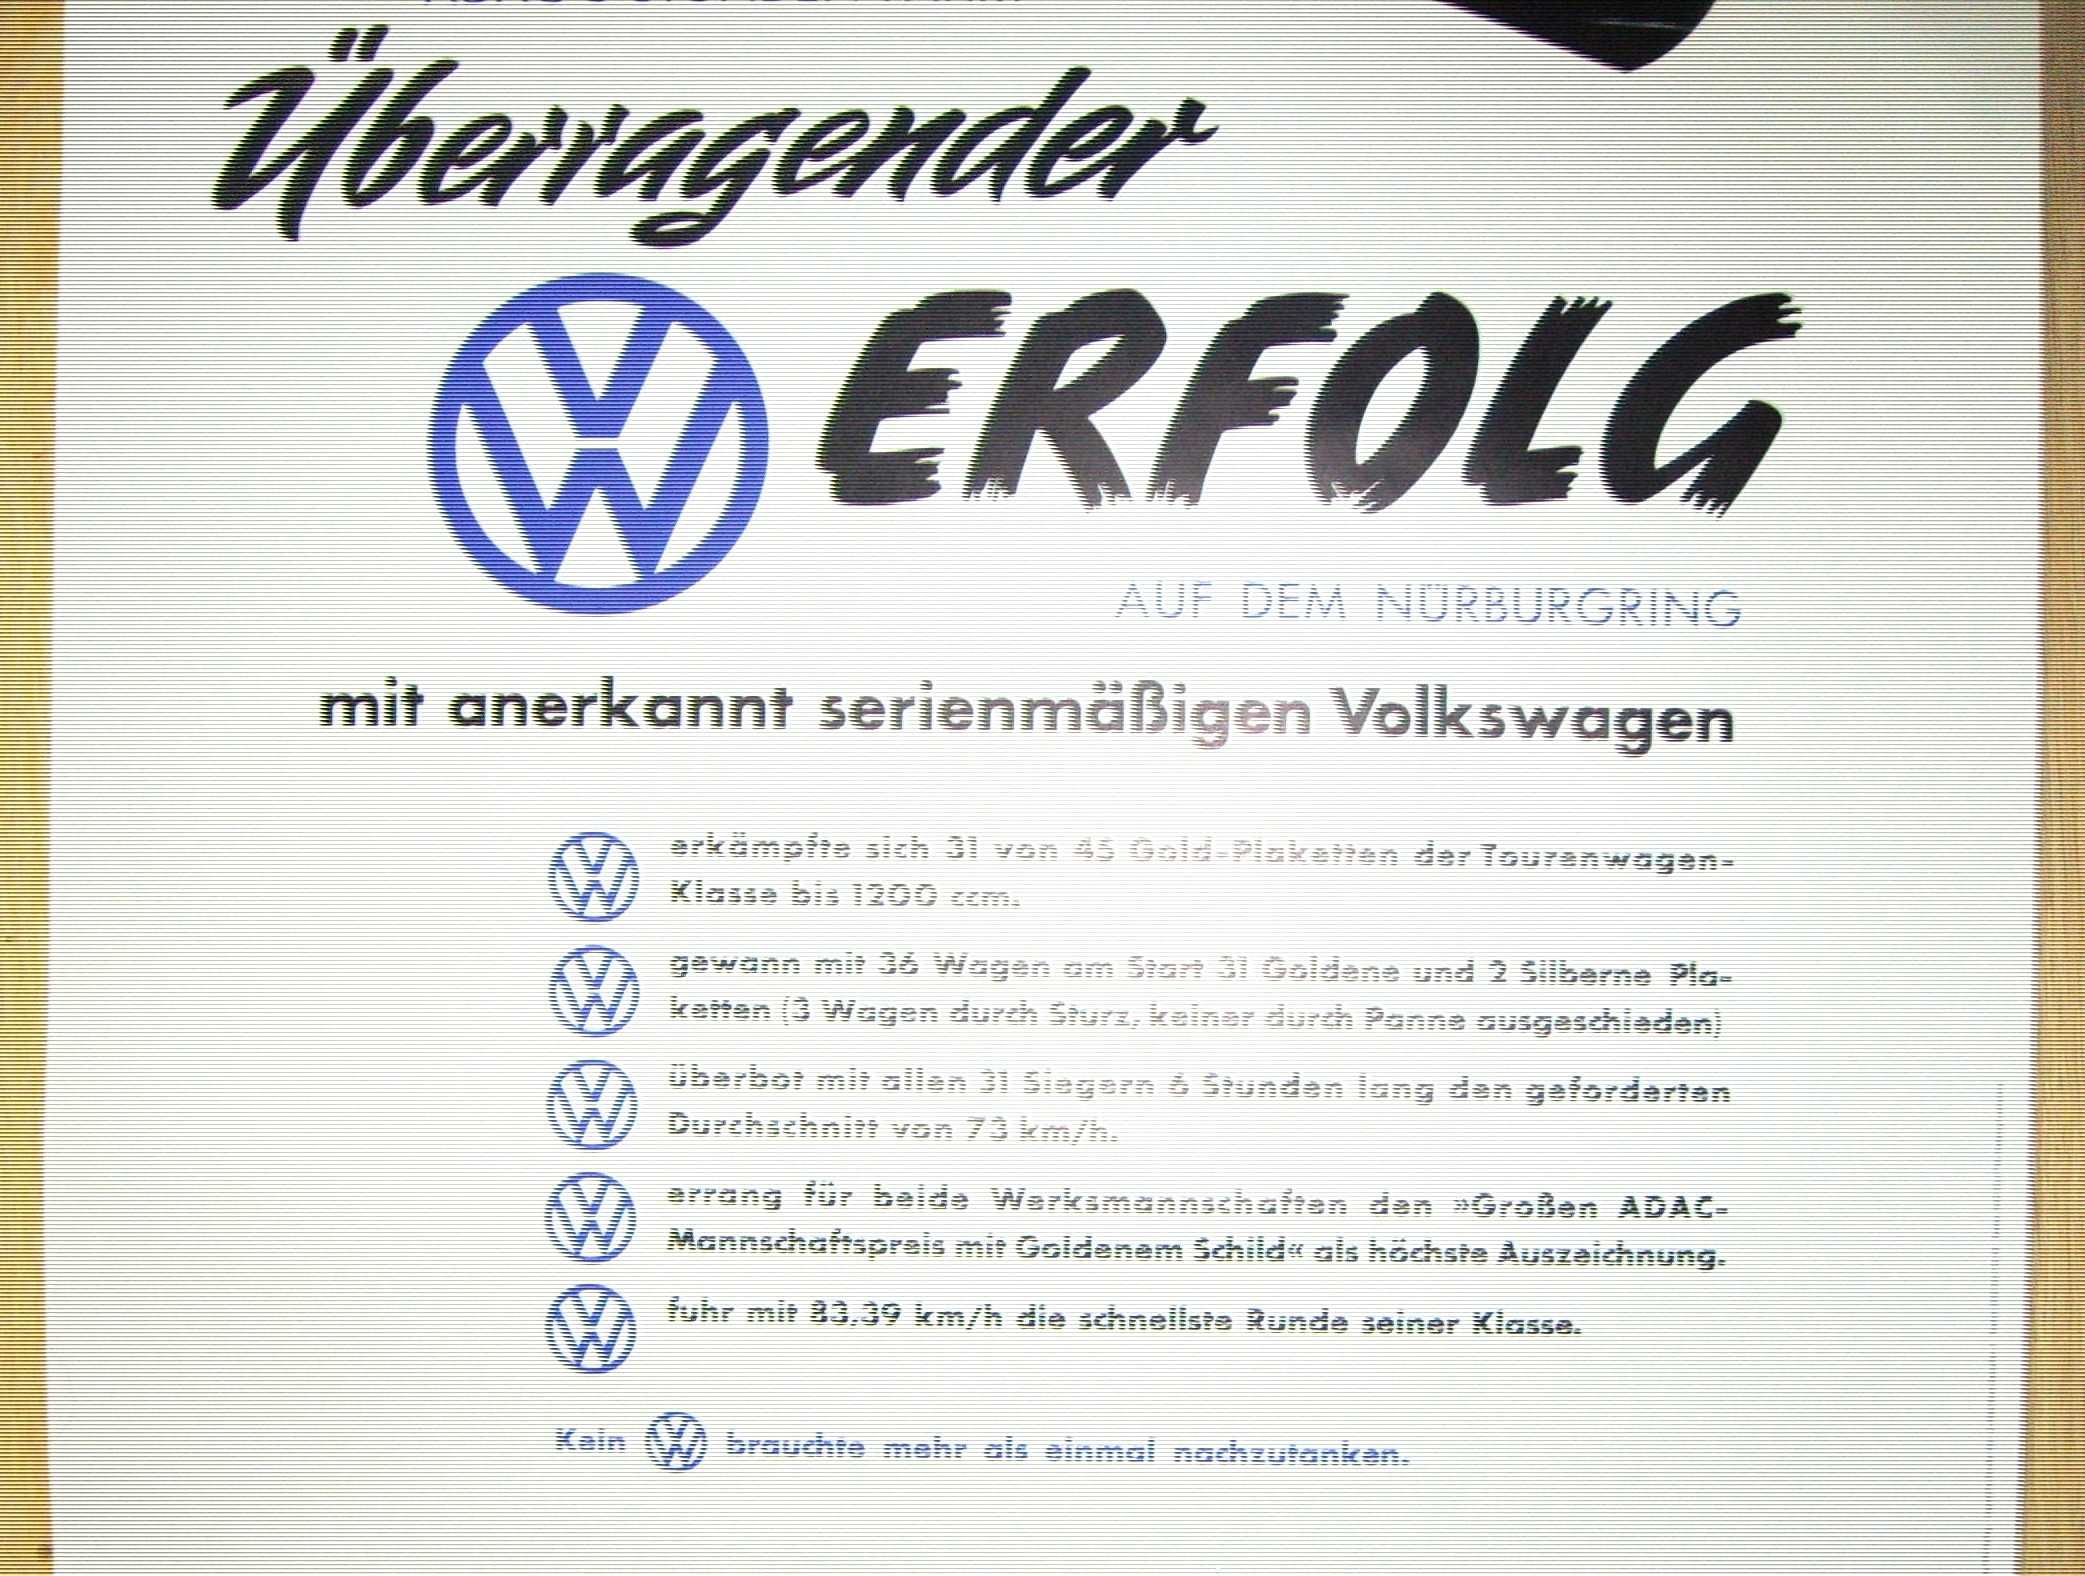 Plakat reklamowy VW-ADAC 6 Stunden Fahrt/oryginał